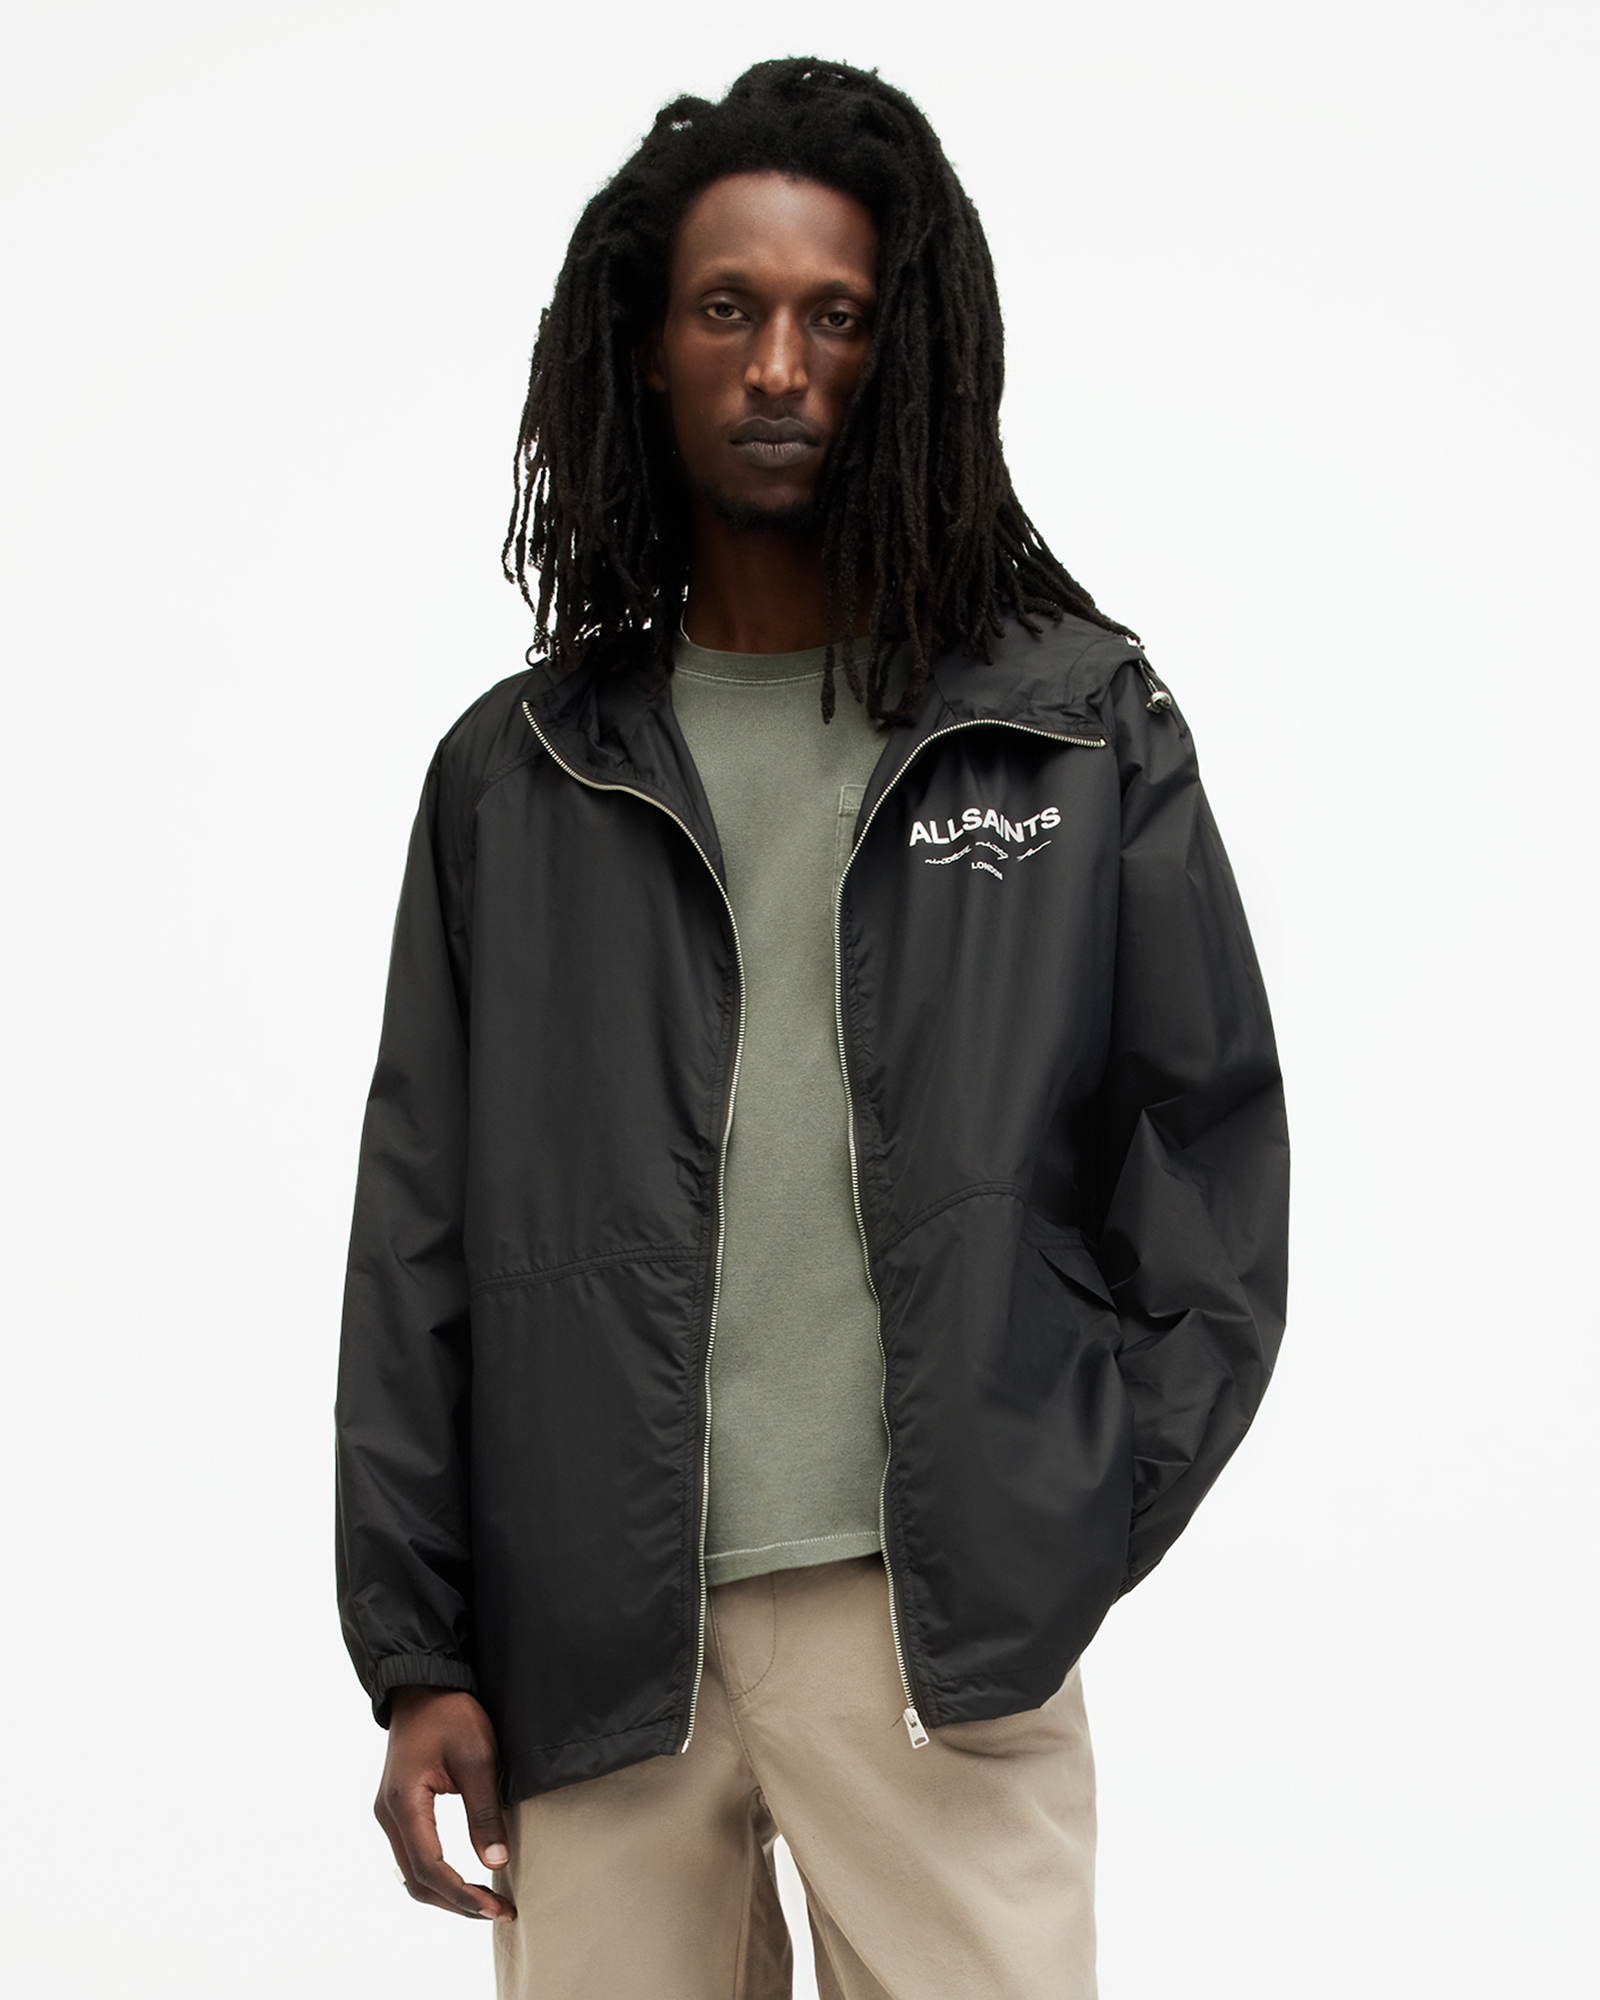 AllSaints Underground Logo Oversized Hood Jacket,, Size: